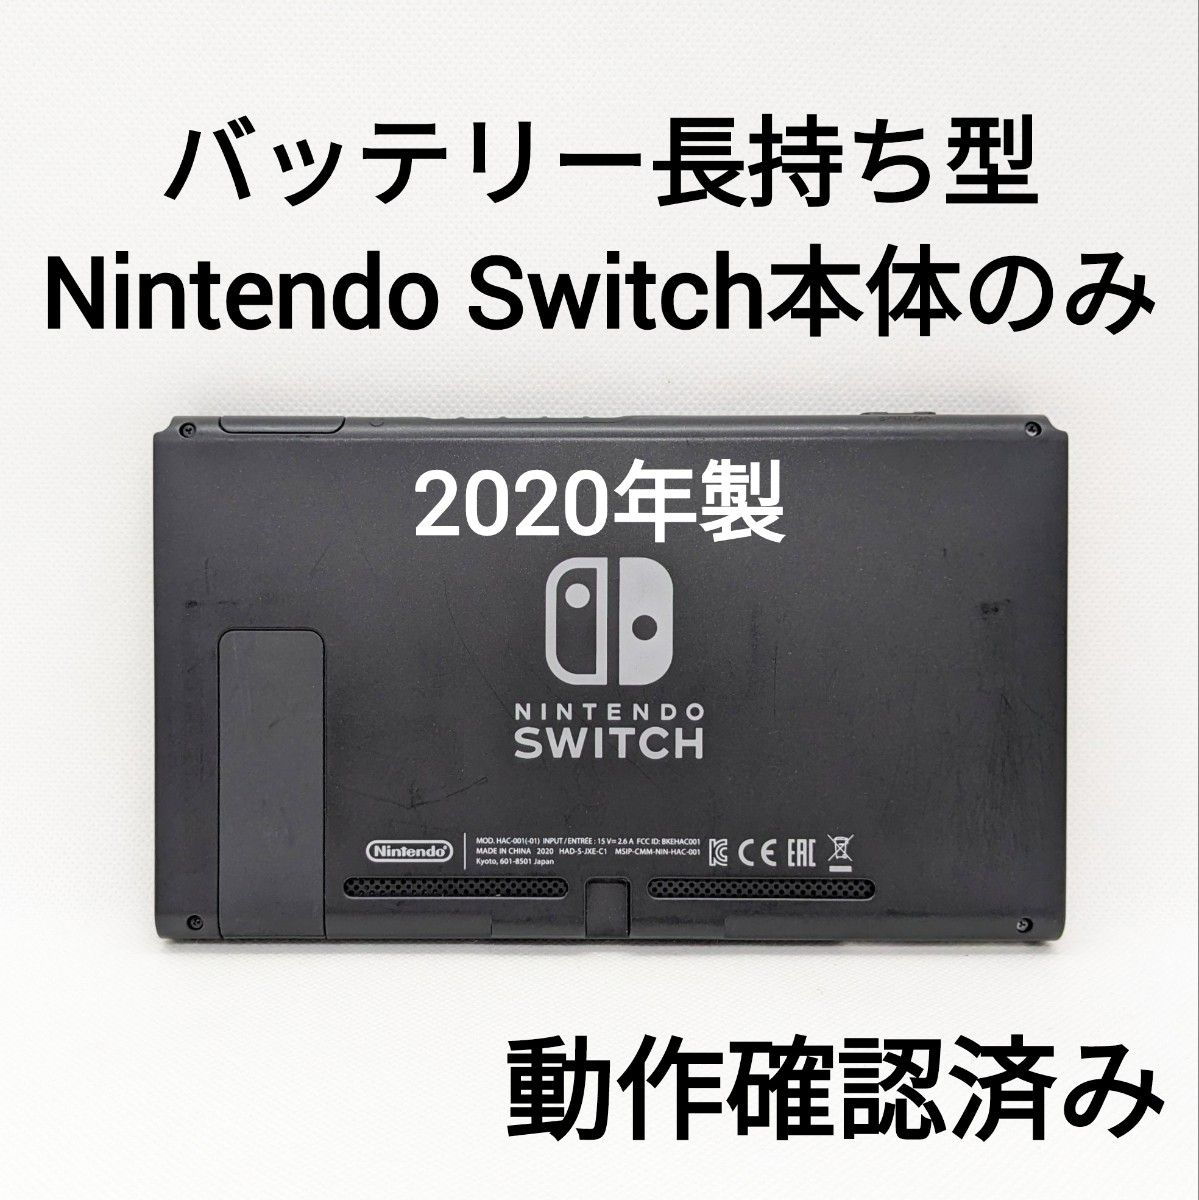 バッテリー長持ち型 Nintendo Switch 2020年製 本体のみ 画面 動作確認済み スイッチ 液晶黄ばみあり